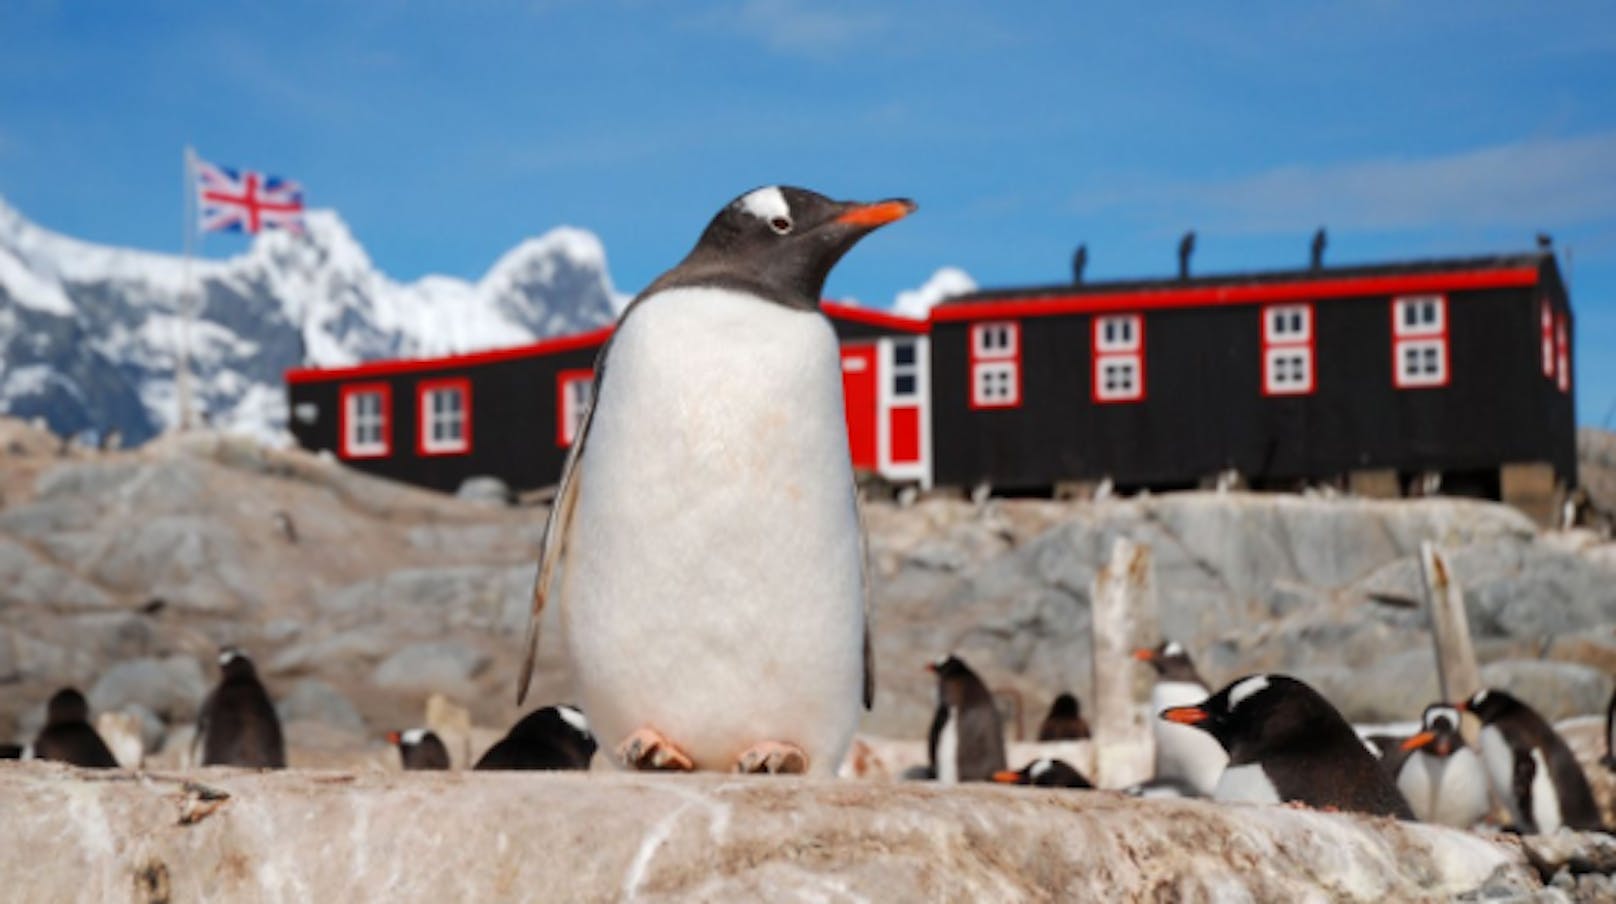 Postler für den wohl coolsten Job der Welt am Südpol gesucht